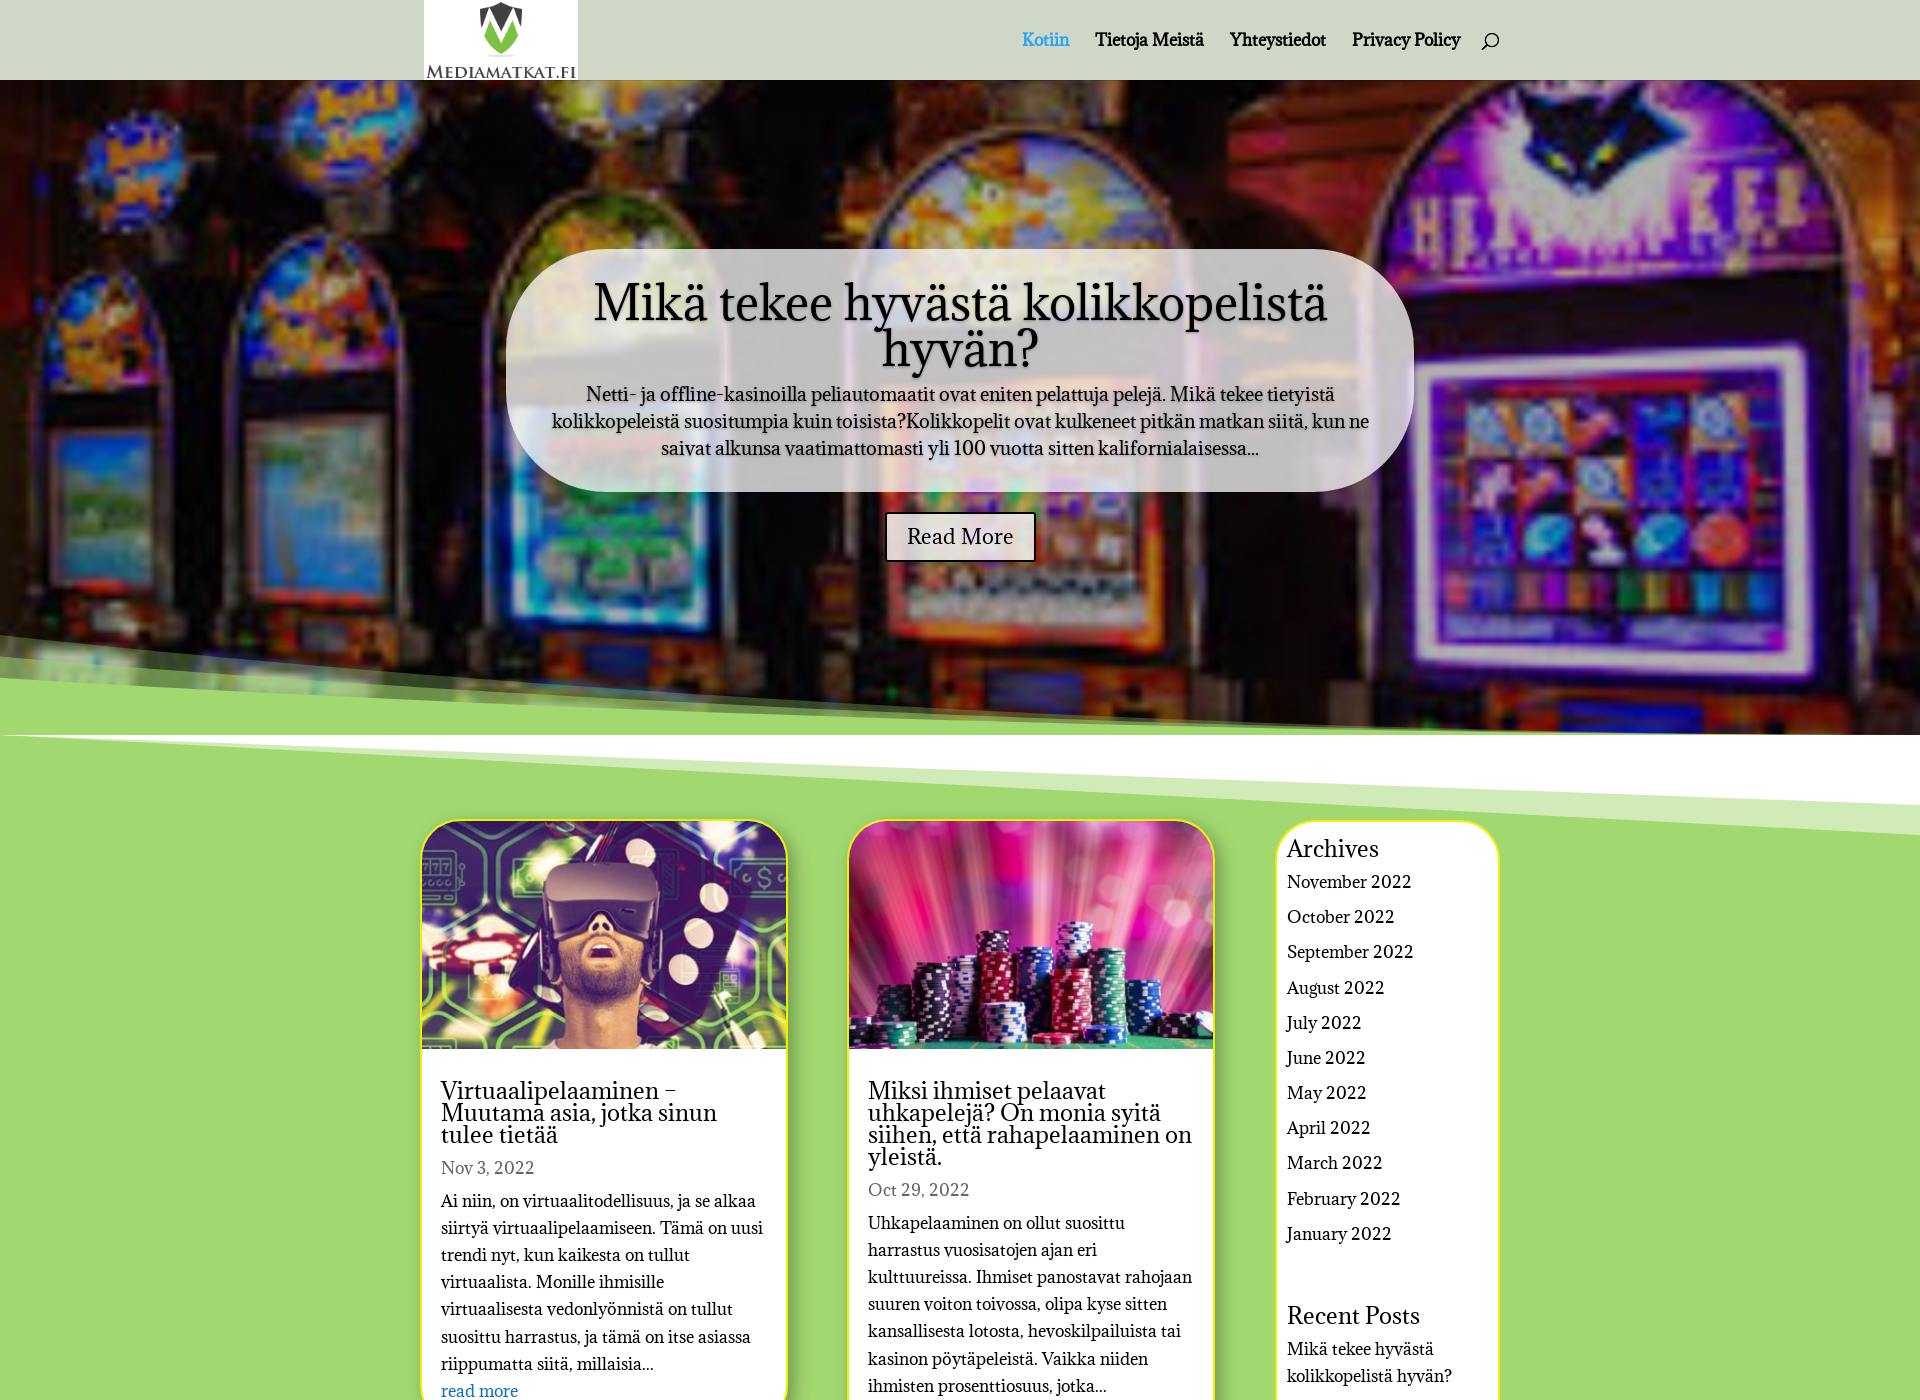 Näyttökuva mediamatkat.fi